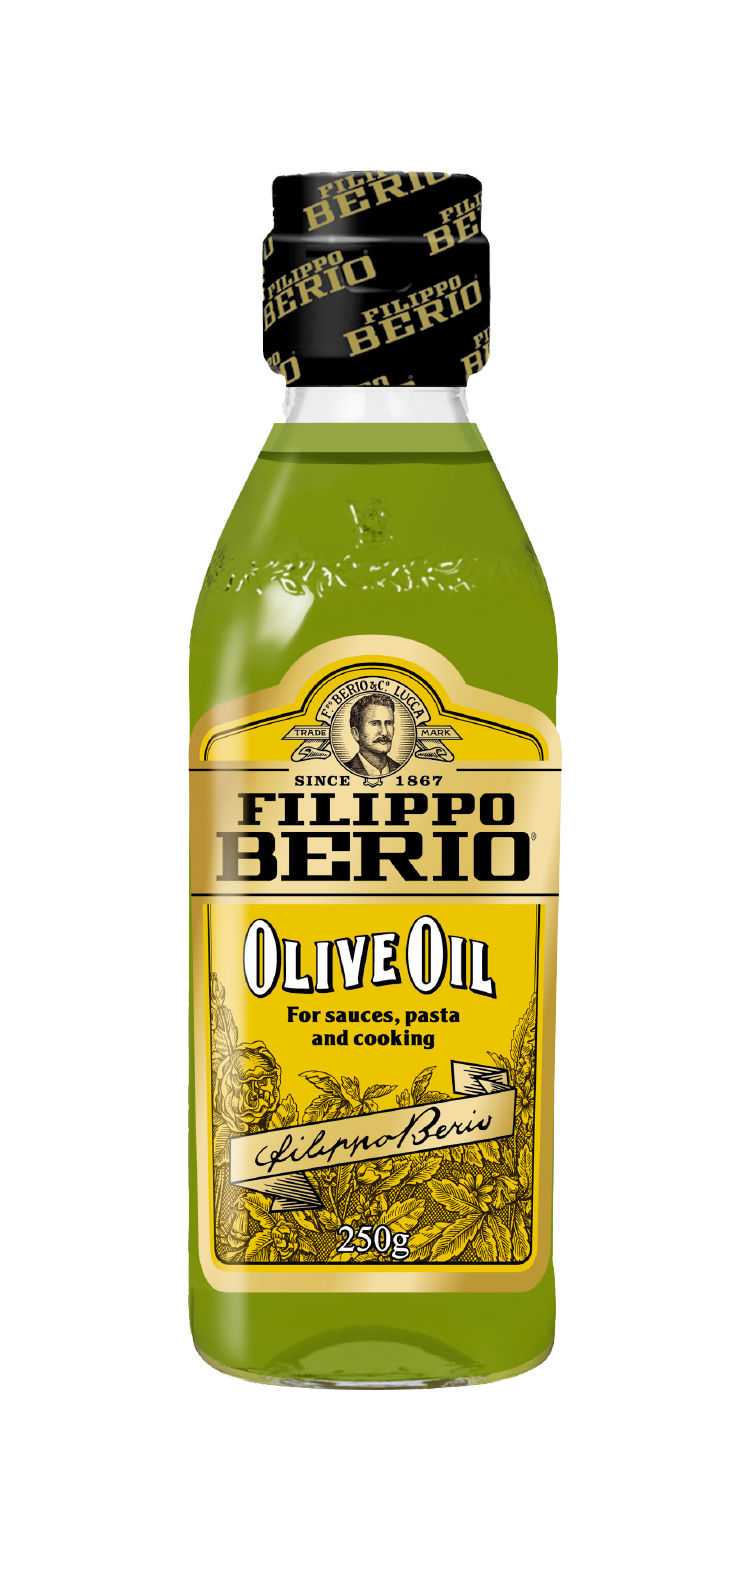 「FILIPPO BERIO オリーブオイル」250g瓶